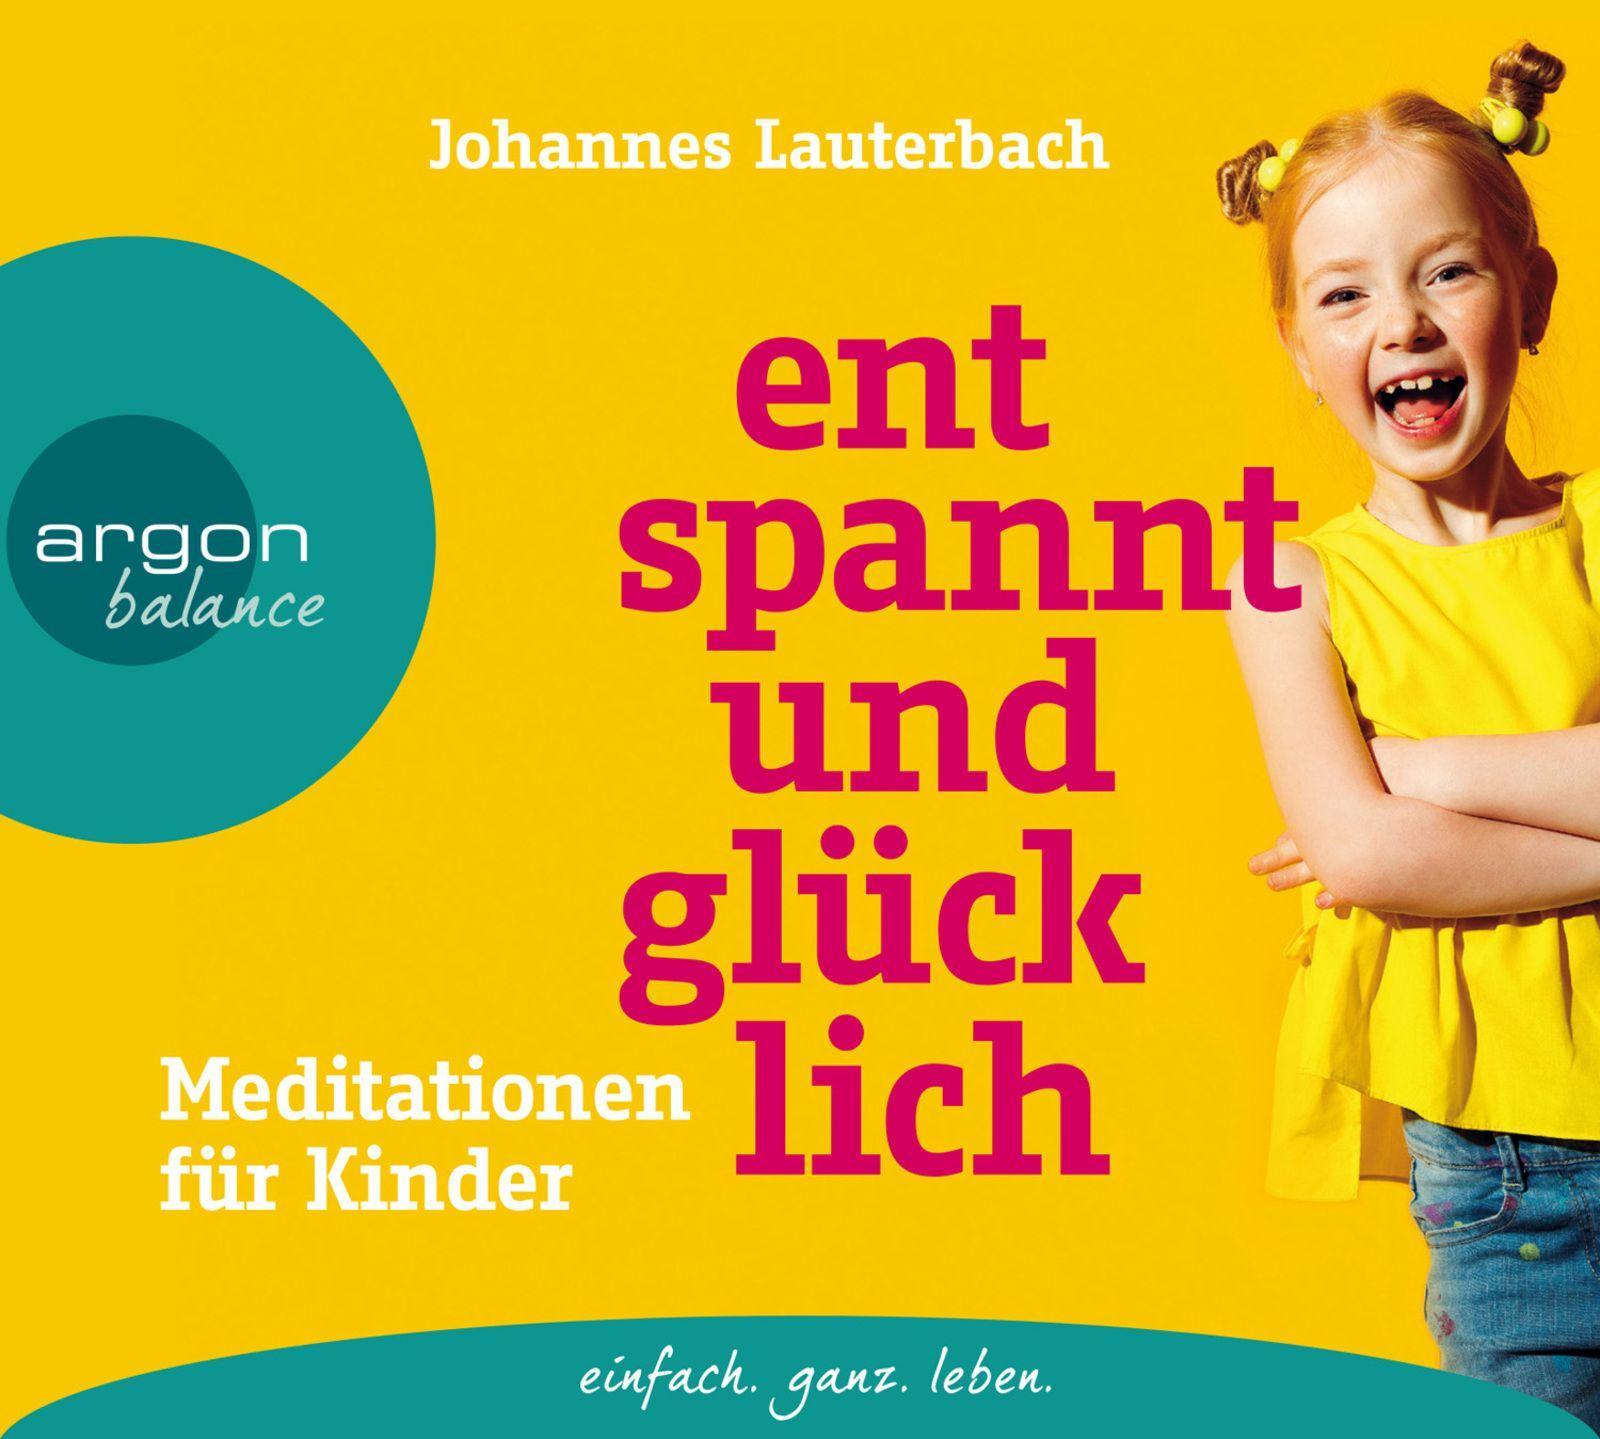 Audio Entspannt und glücklich Johannes Lauterbach